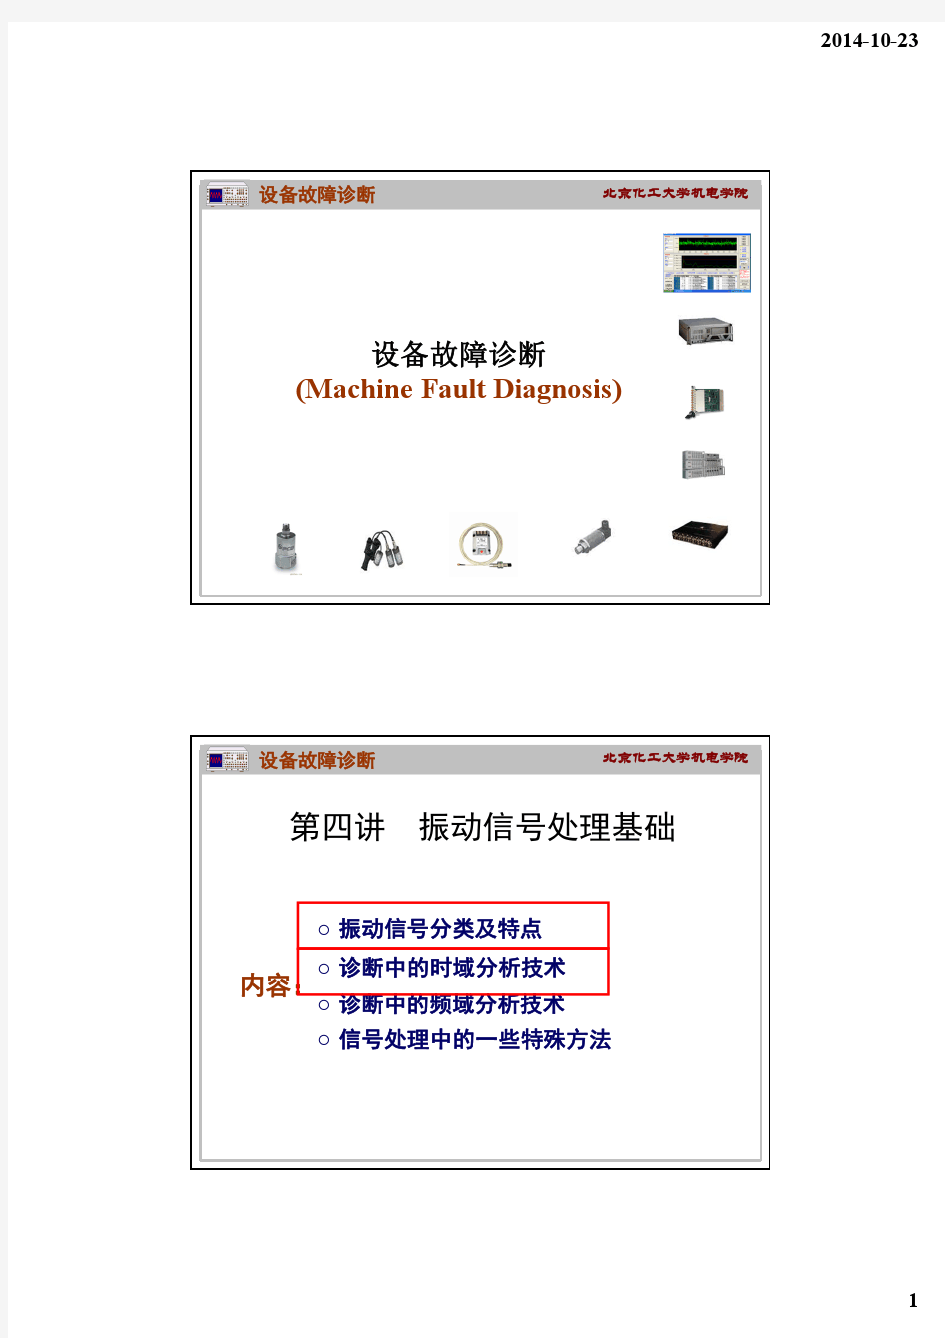 wang05  第3讲 机械振动信号处理技术-01-2012-11